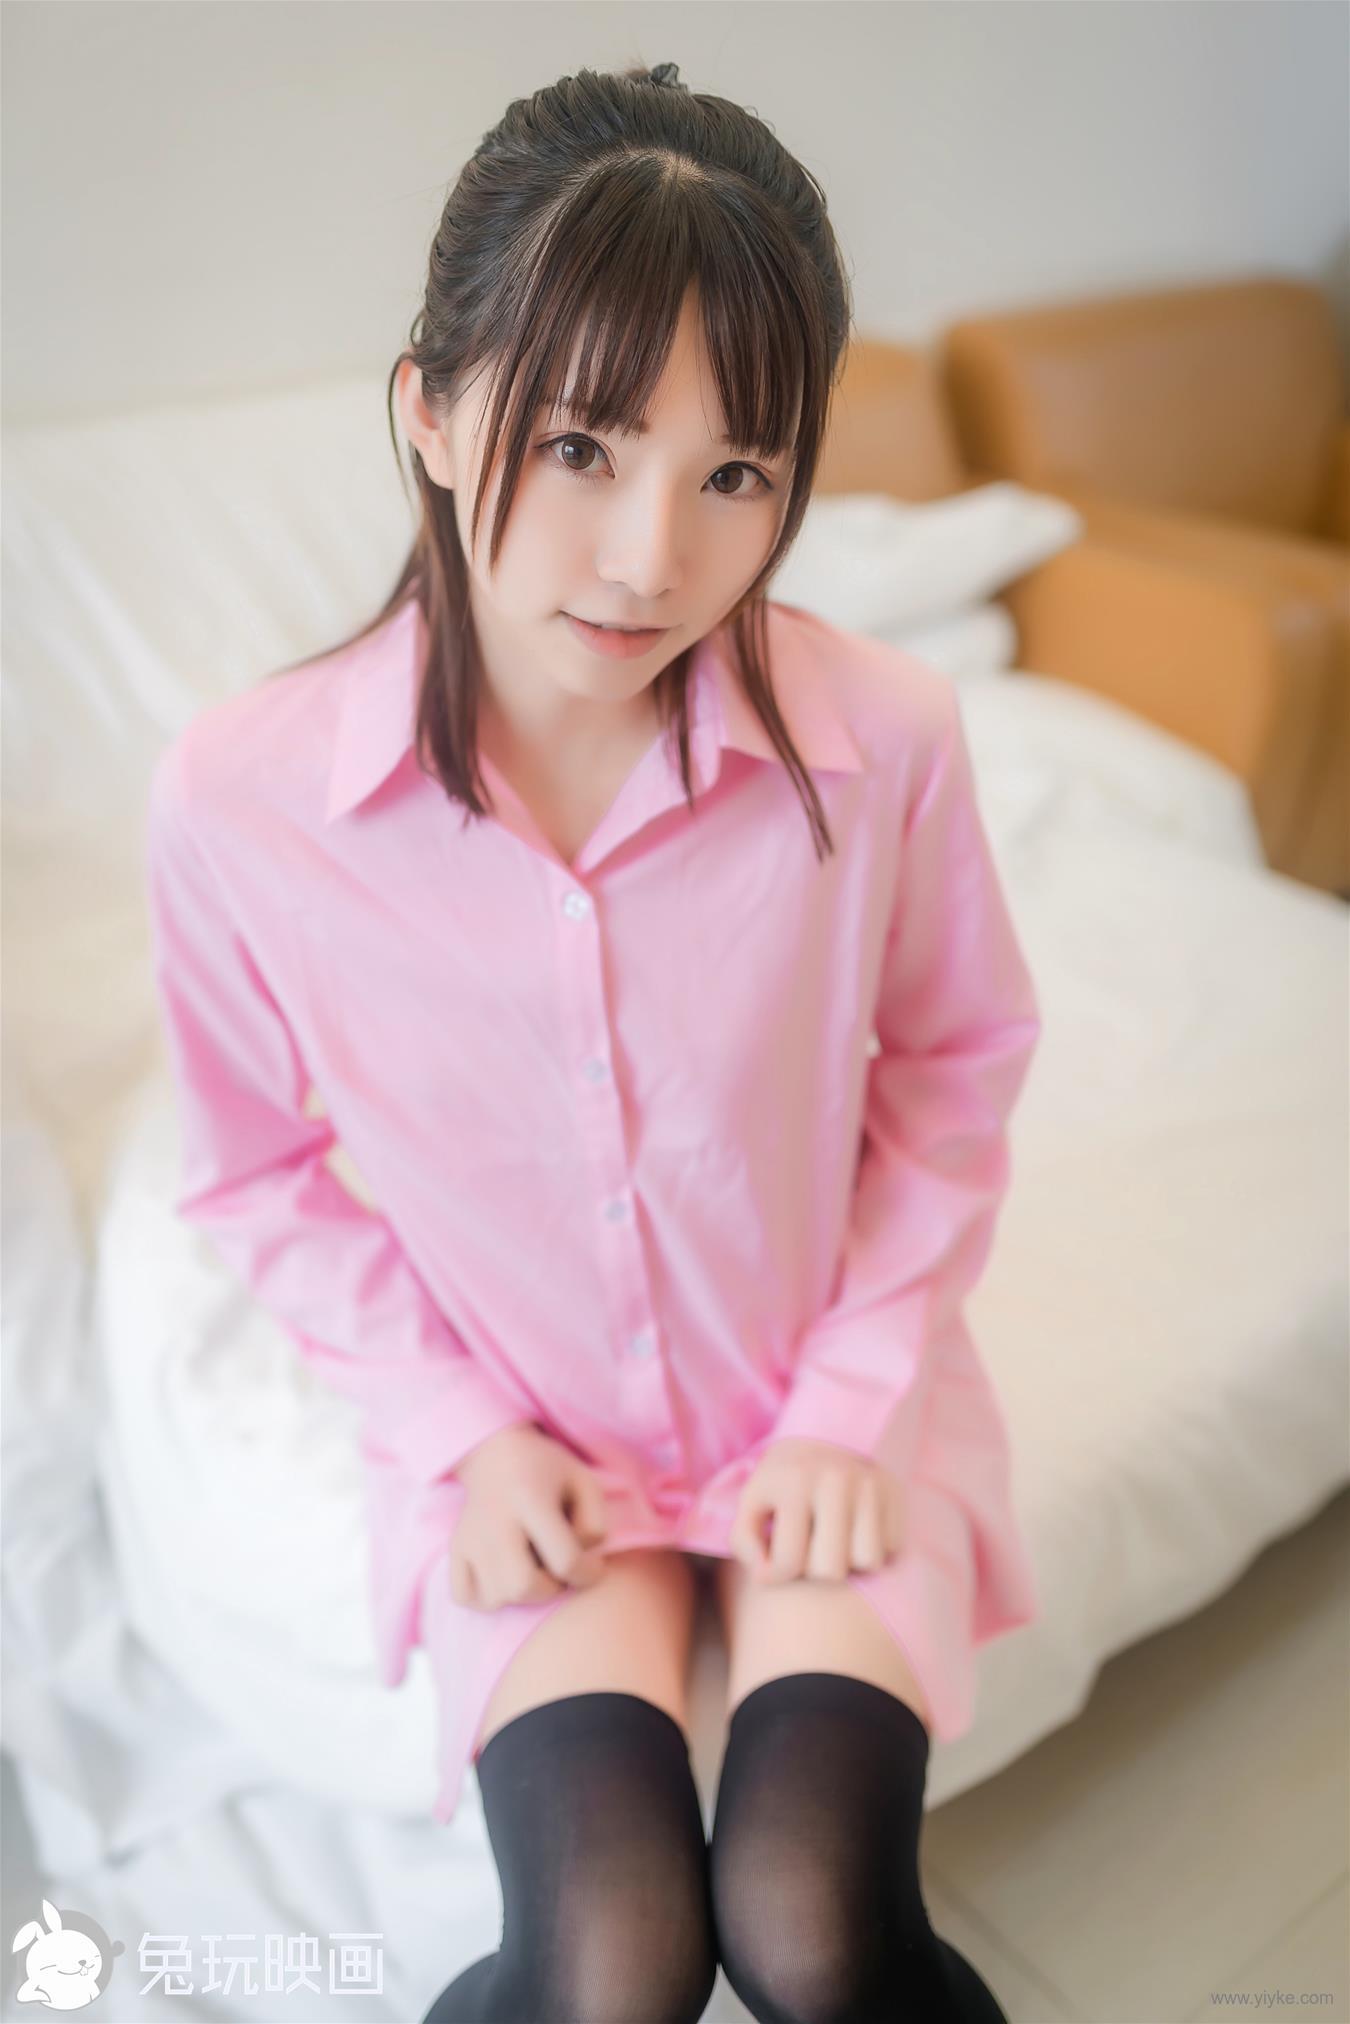 粉色襯衫 [38P] - 美女圖 -